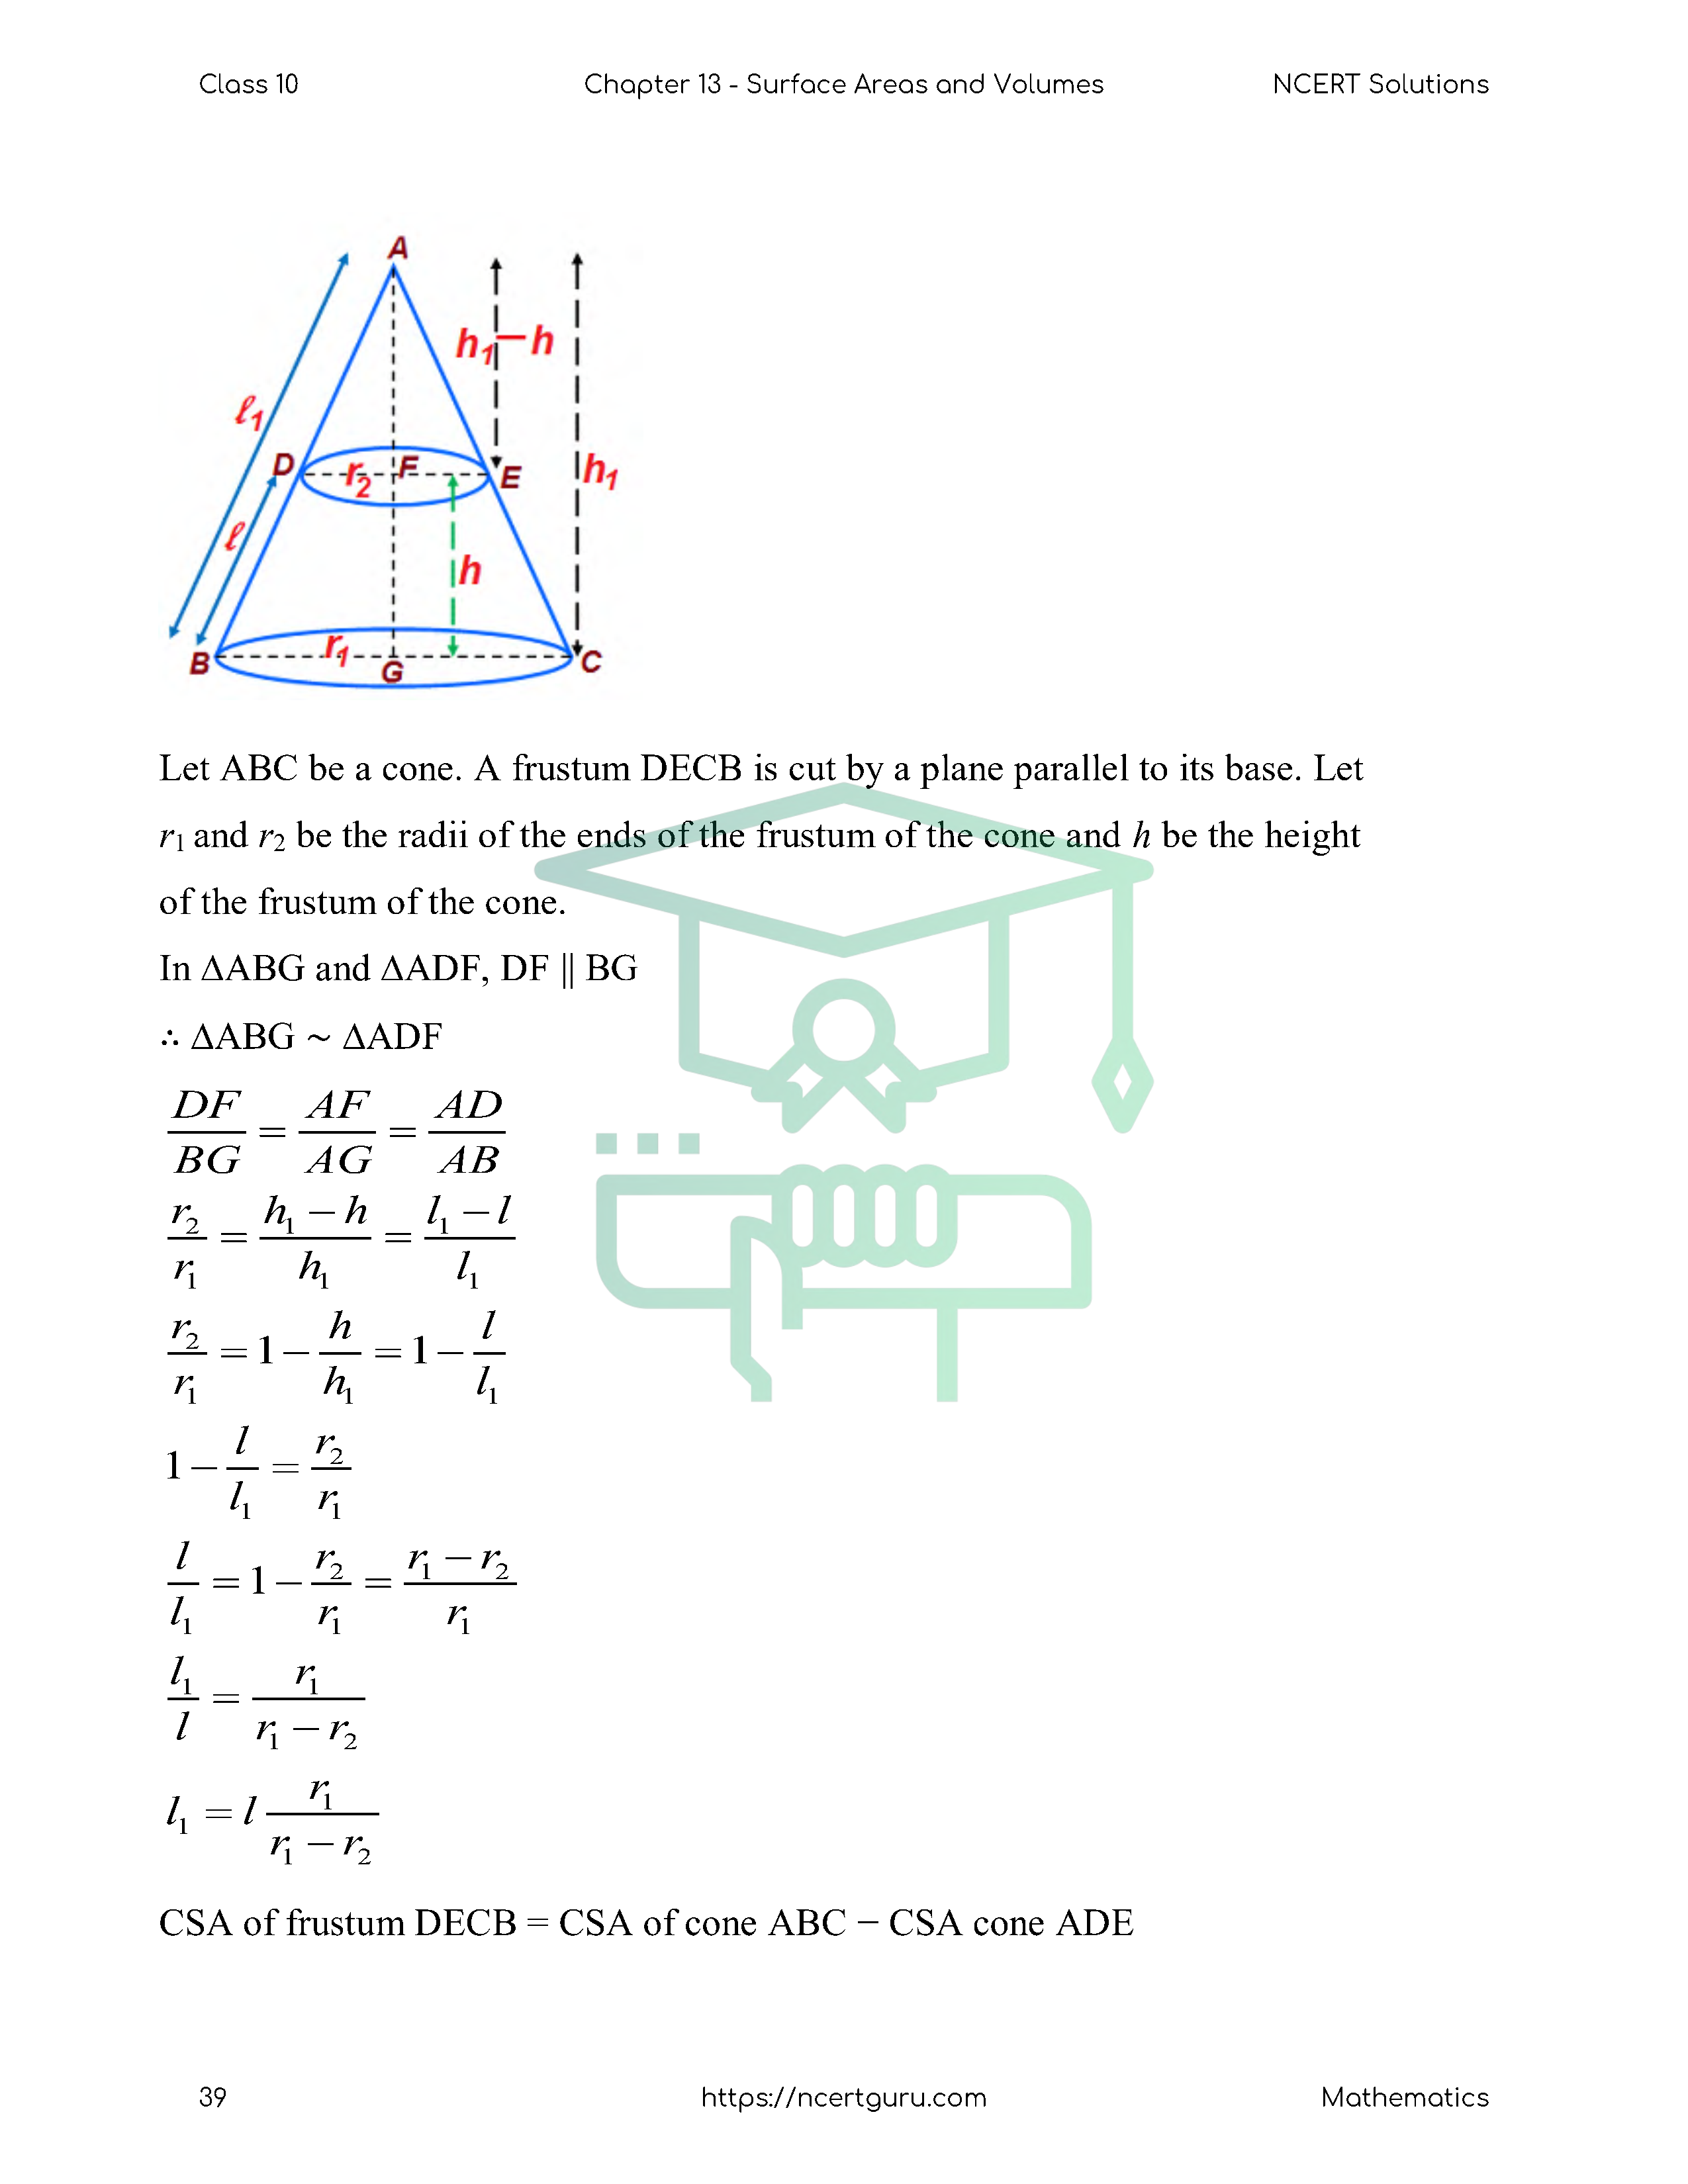 NCERT Solutions for Class 10 Maths Chapter 13